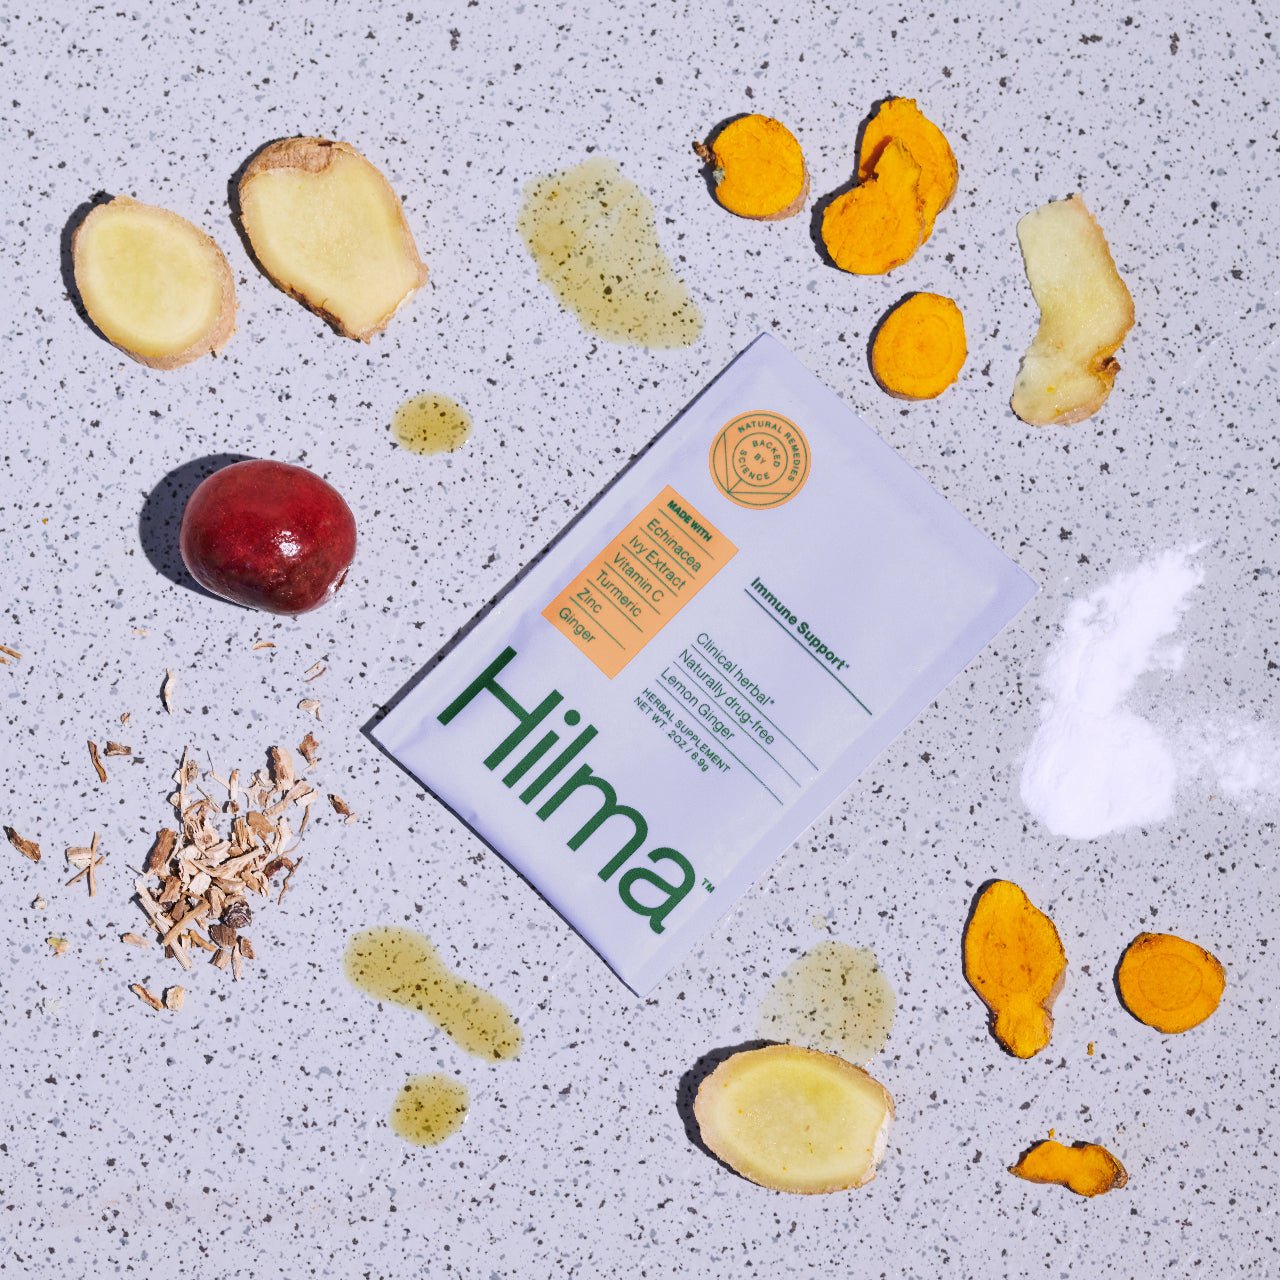 Hilma Natural Ingredients